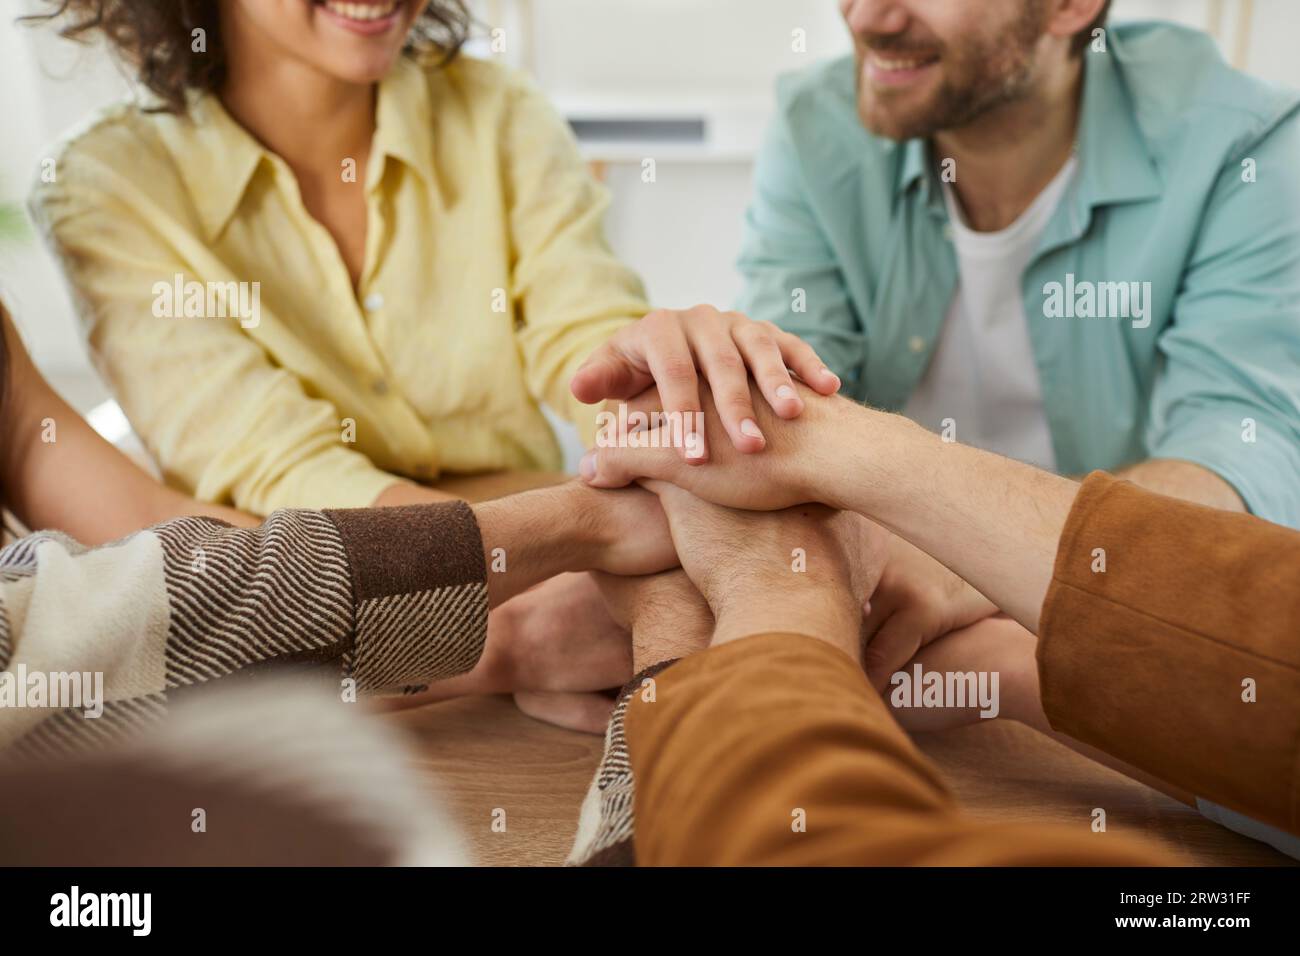 Ein Team glücklicher junger Freunde, die gemeinsam Spaß haben und ihre Hände auf einem Tisch stapeln Stockfoto